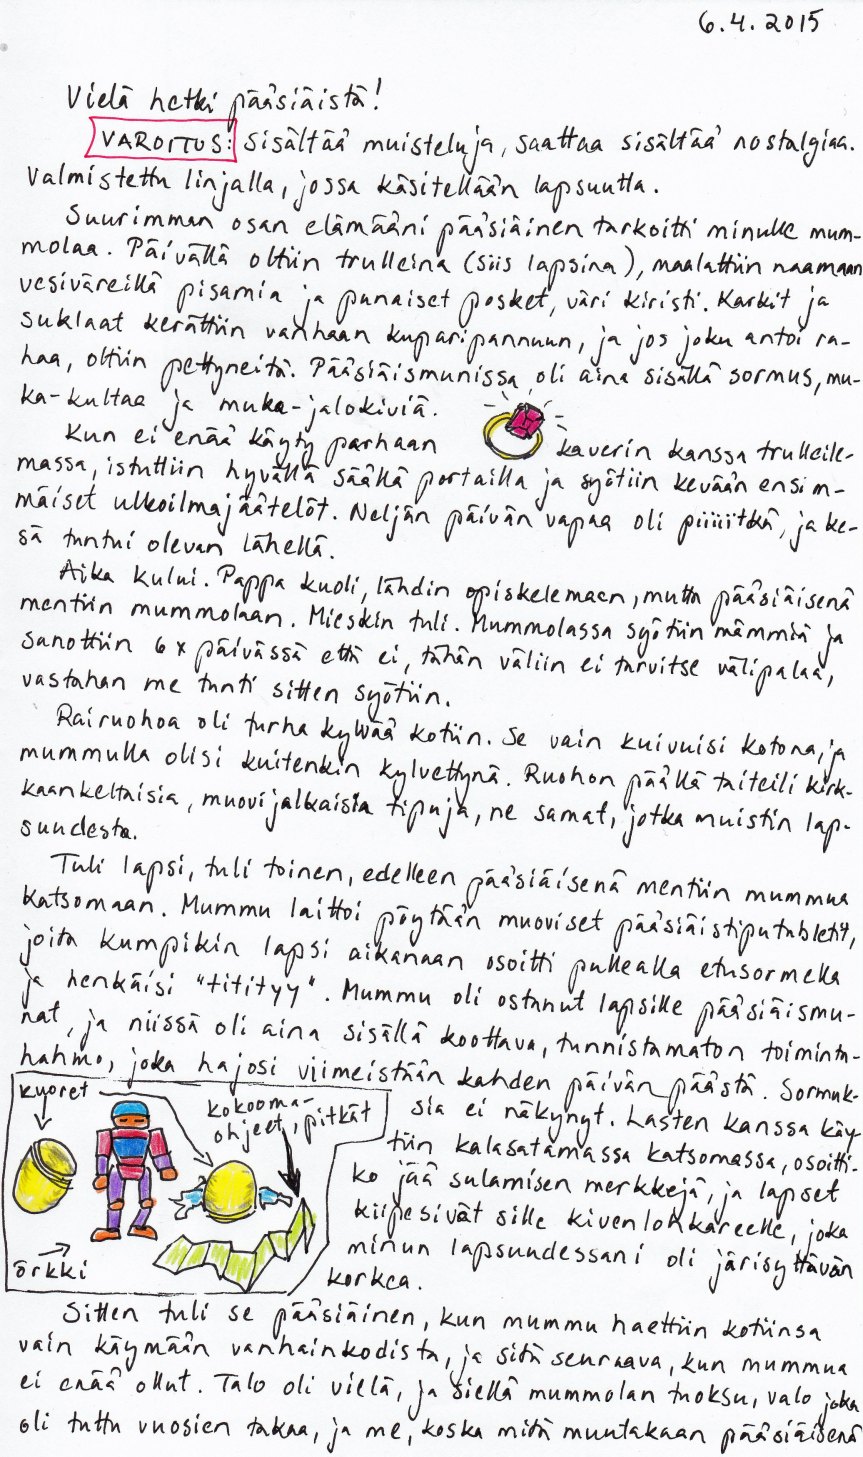 Kirje 4.6.2015 sivu 1, jossa muistellaan Kirjeilijän pääsiäismuistoja mummolassa